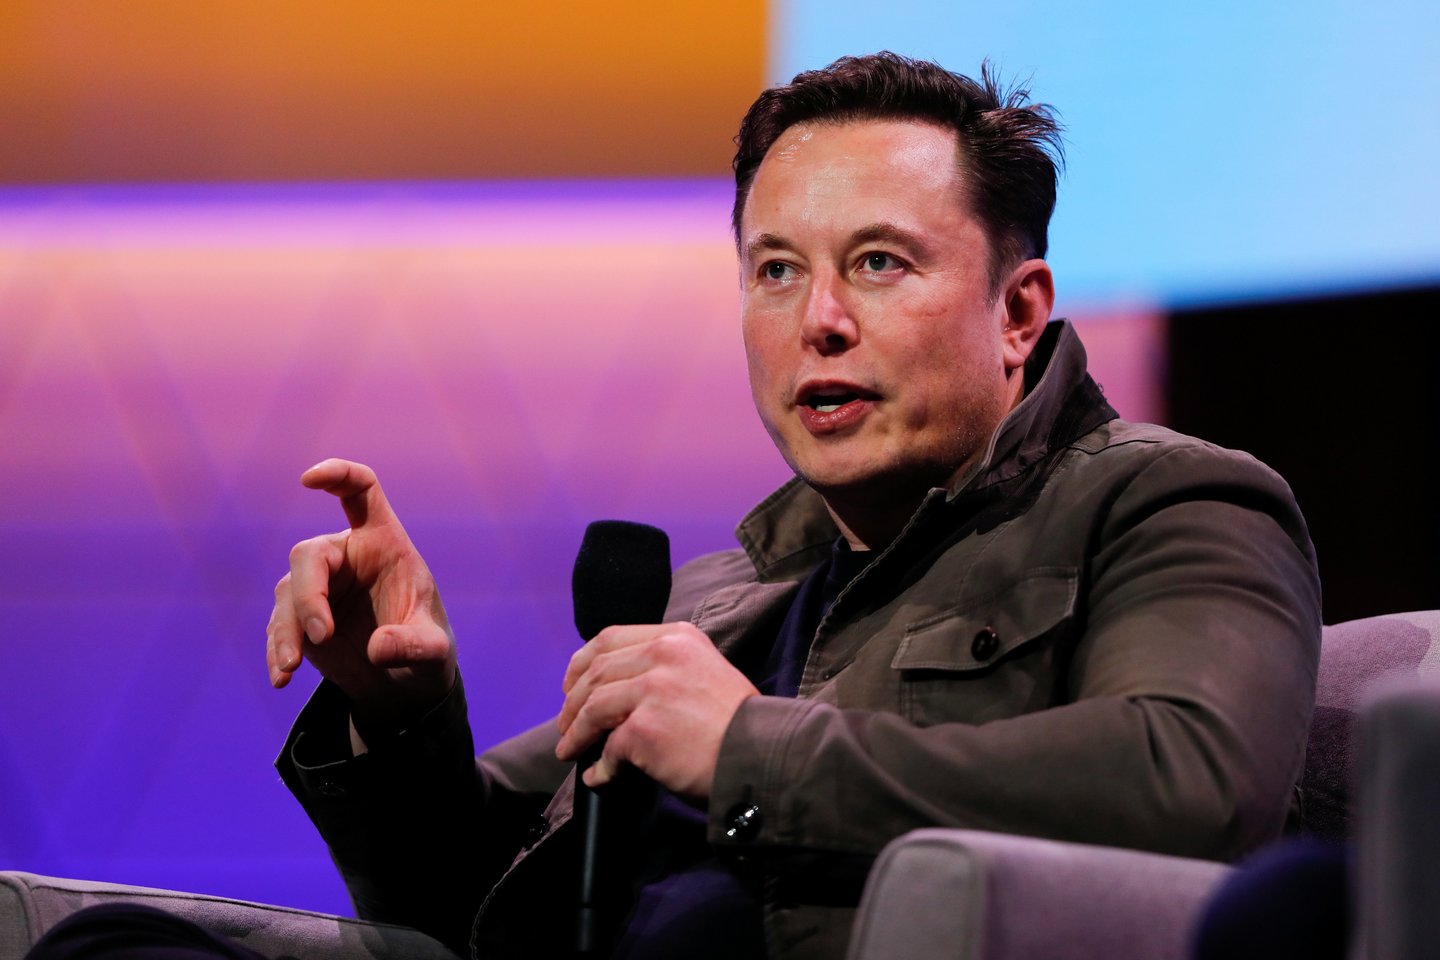  Eloną Muską galima drąsiai lyginti su Holivudo žvaigždėmis – kompanijos „Tesla“ vadovas dažnai dalyvauja aukštuomenės susibūrimuose, o jo idėjos, kurias publika ne visada priima su entuziazmu, garantuoja jam populiarumą socialiniuose tinkluose.<br> Reuters/Scanpix nuotr.